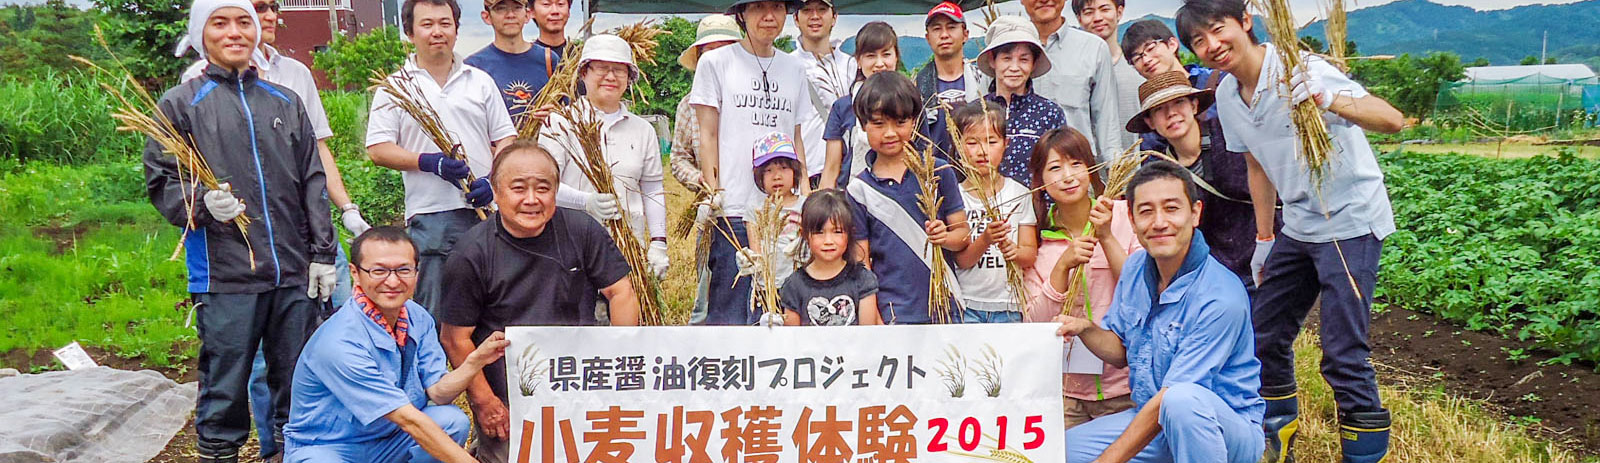 新潟県産醤油復刻プロジェクト 小麦収穫体験2015